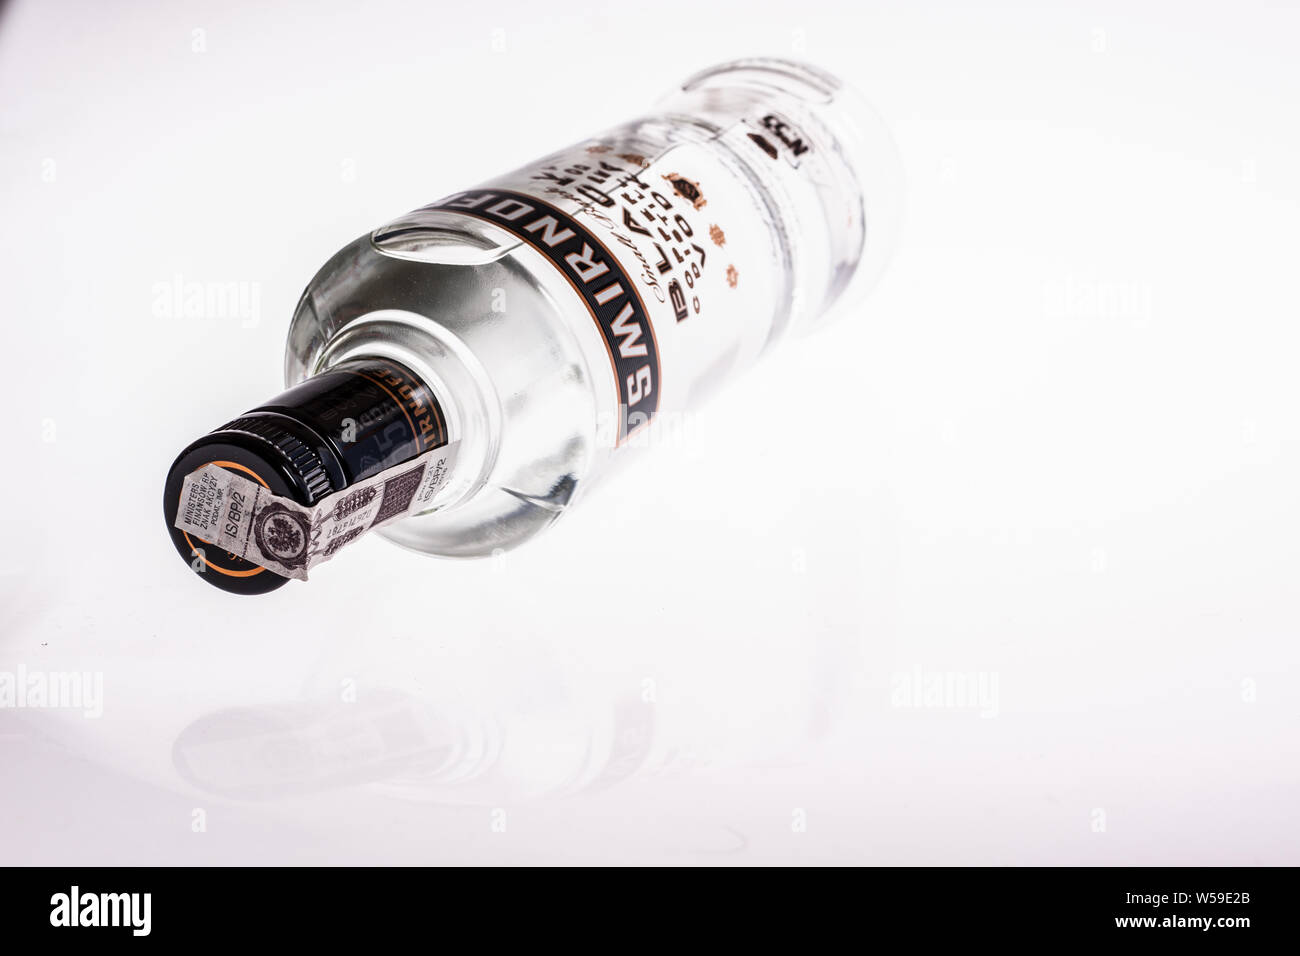 Una bottiglia di vodka, Smirnoff nero, pentola di rame Acqua distillata, sfondo bianco, isolato Foto Stock